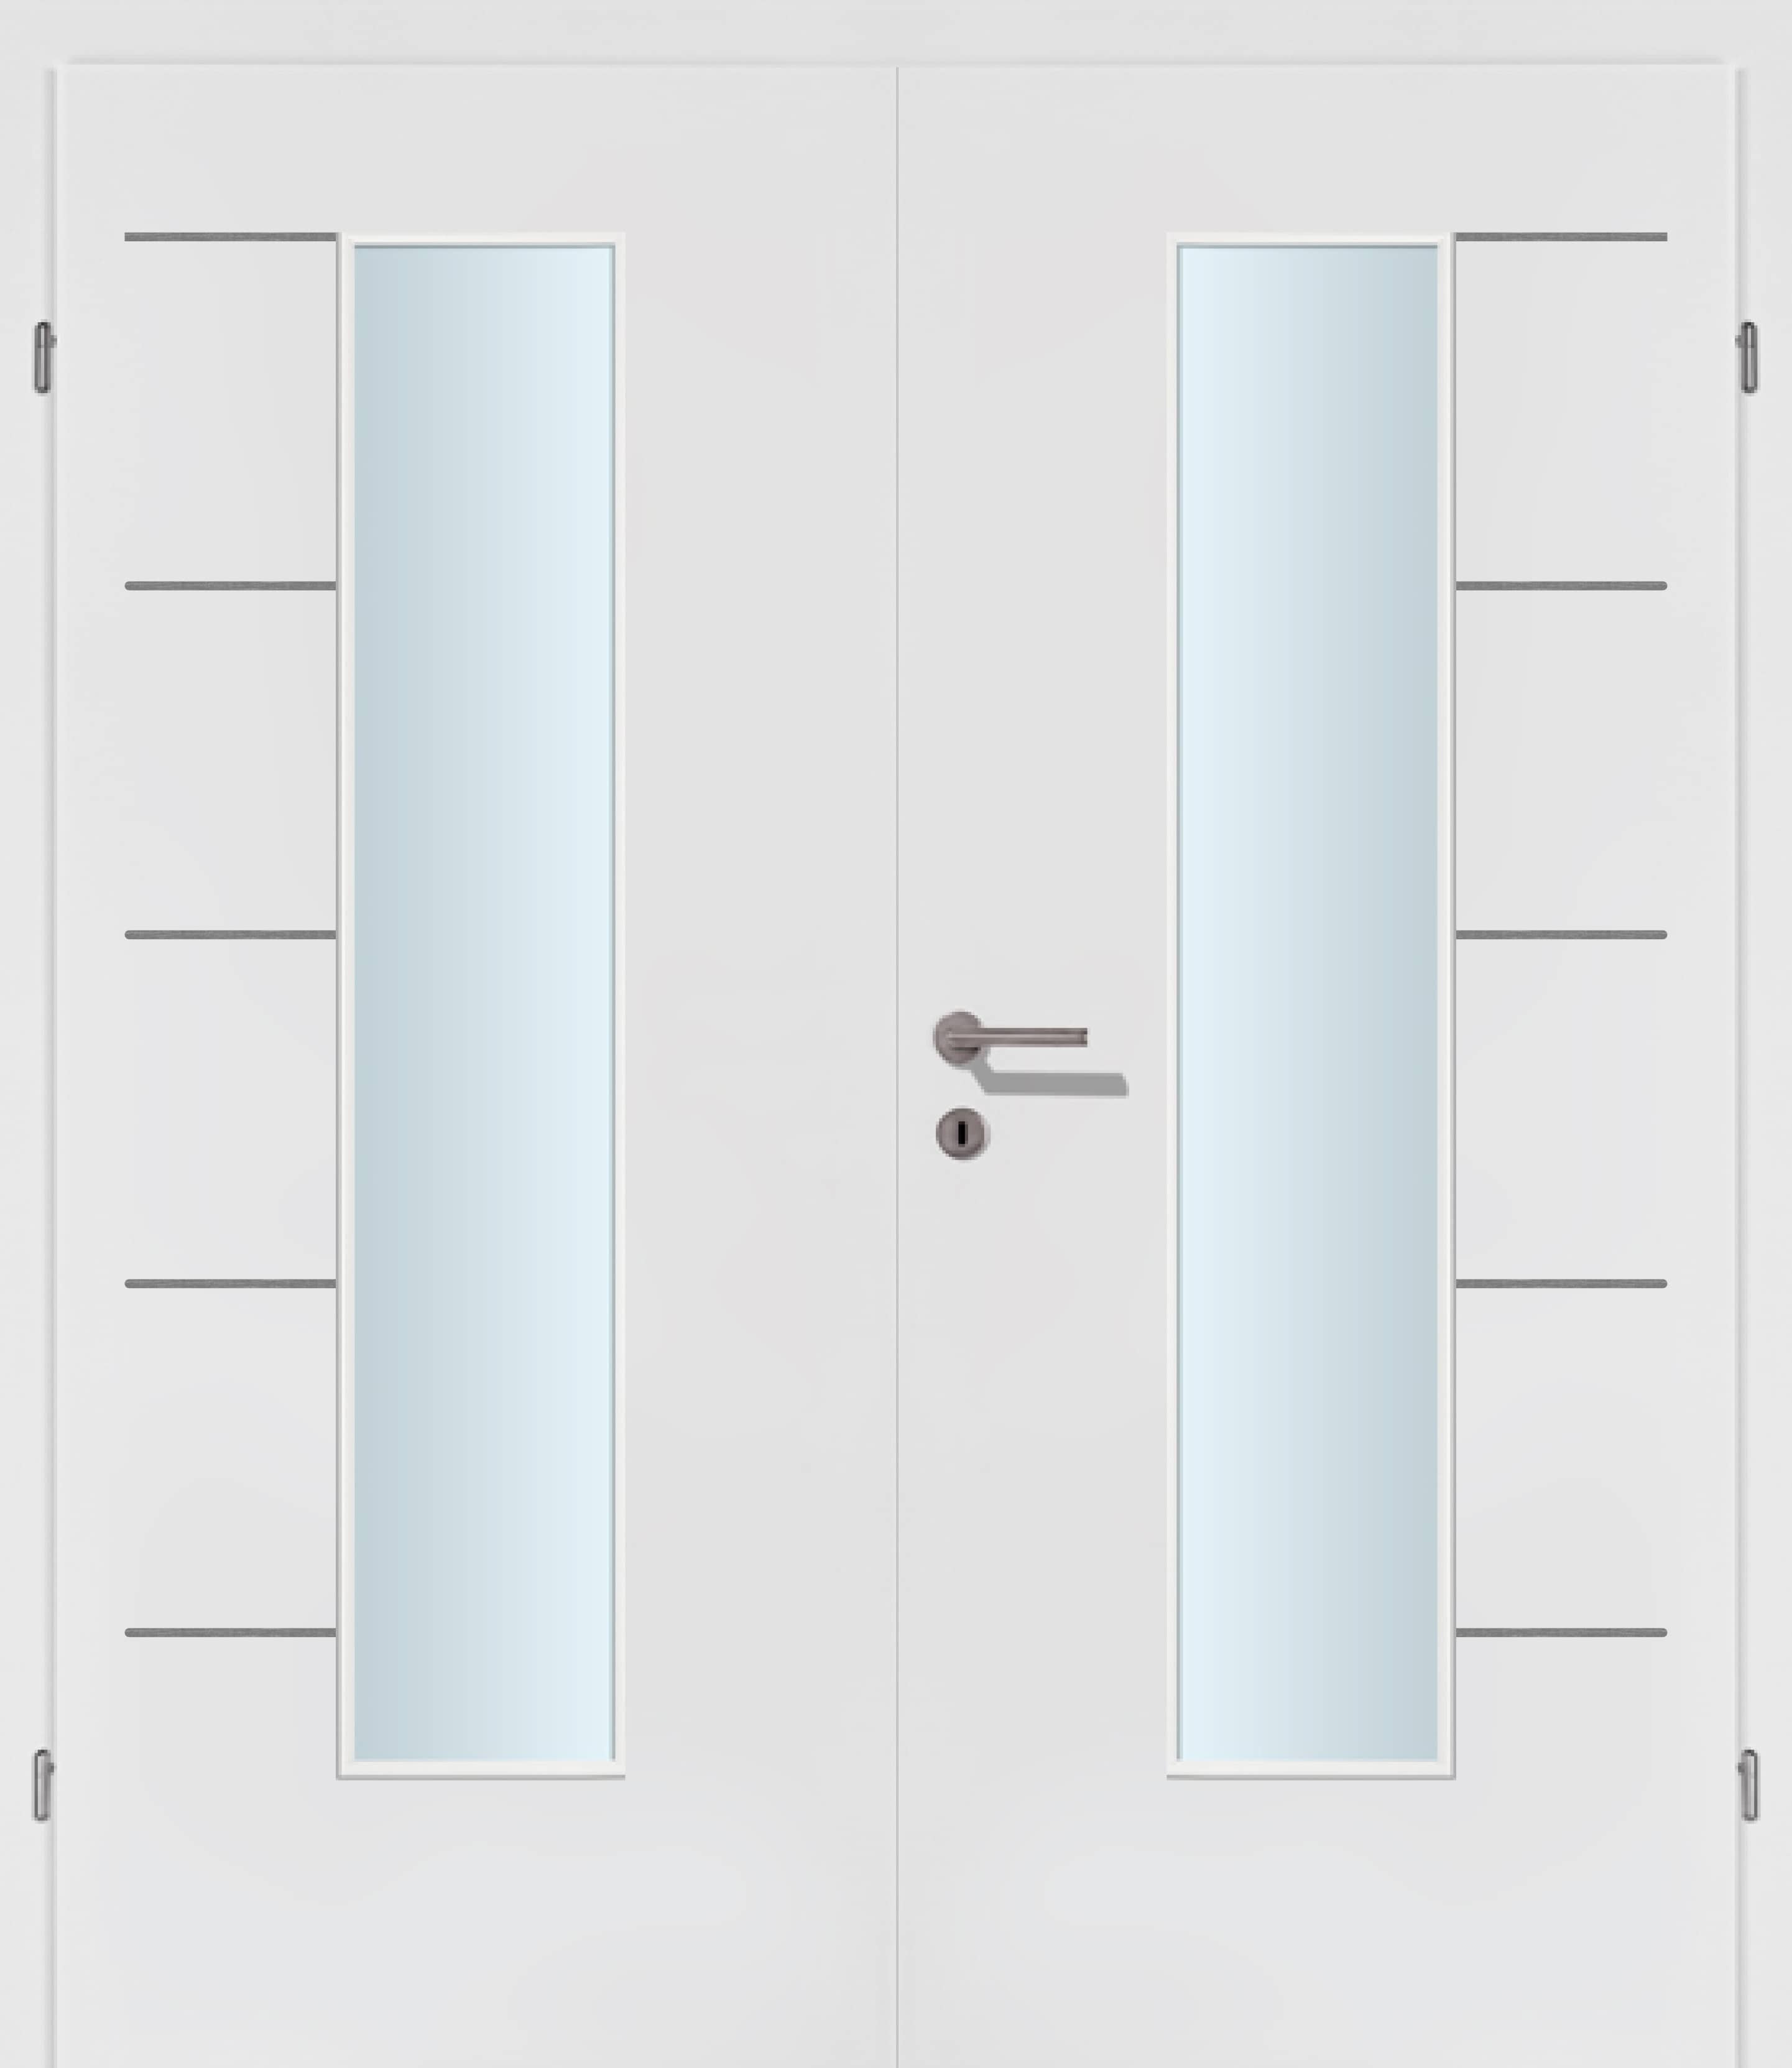 Selektion T48 Alu Effekt Lisenen weiss Innentür Inkl. Zarge (Türrahmen) Doppeltüre Inkl. Glaslichte EN Mittig